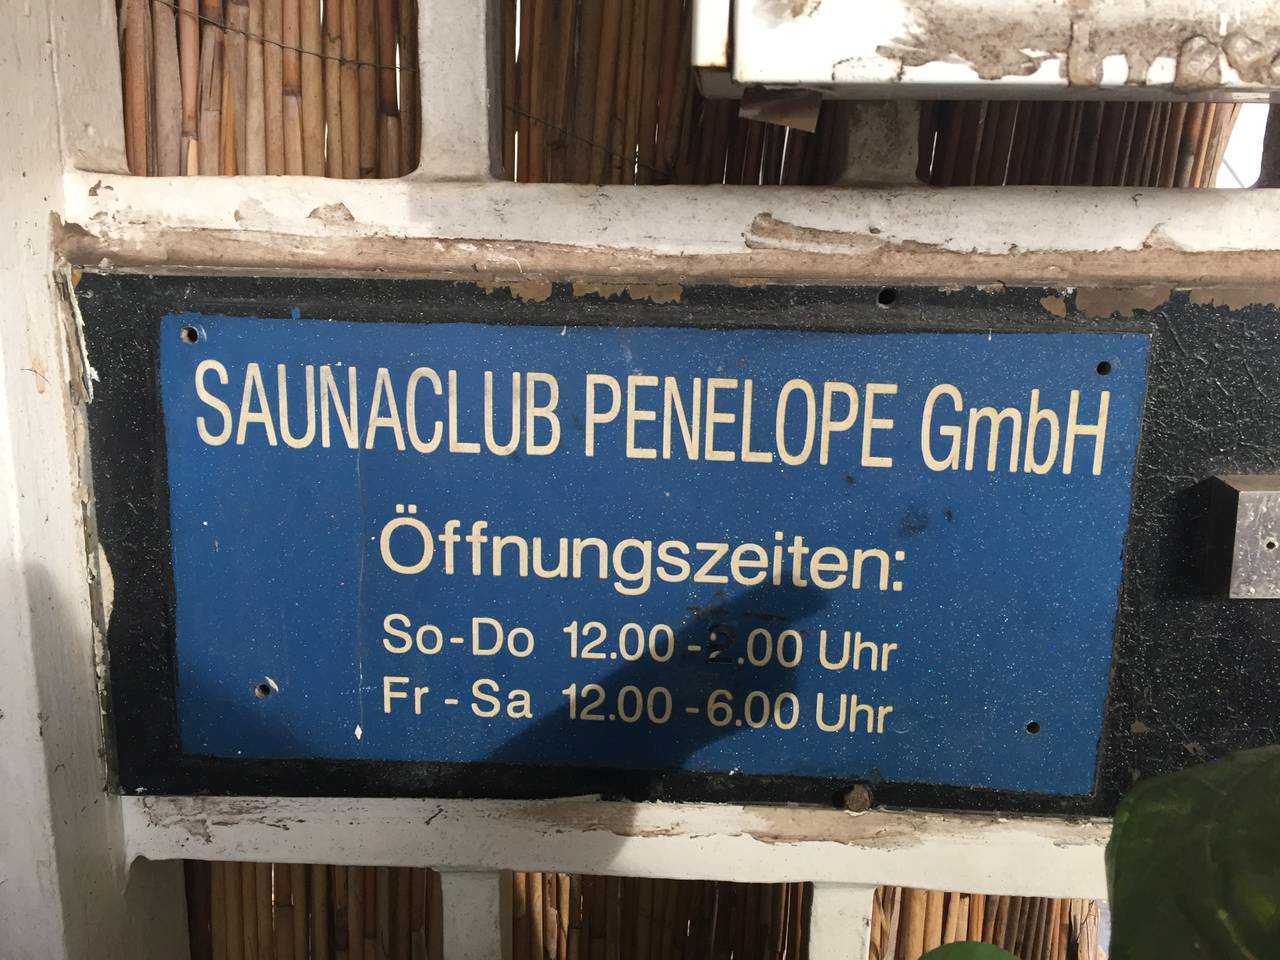 Club penelope sauna Der neue